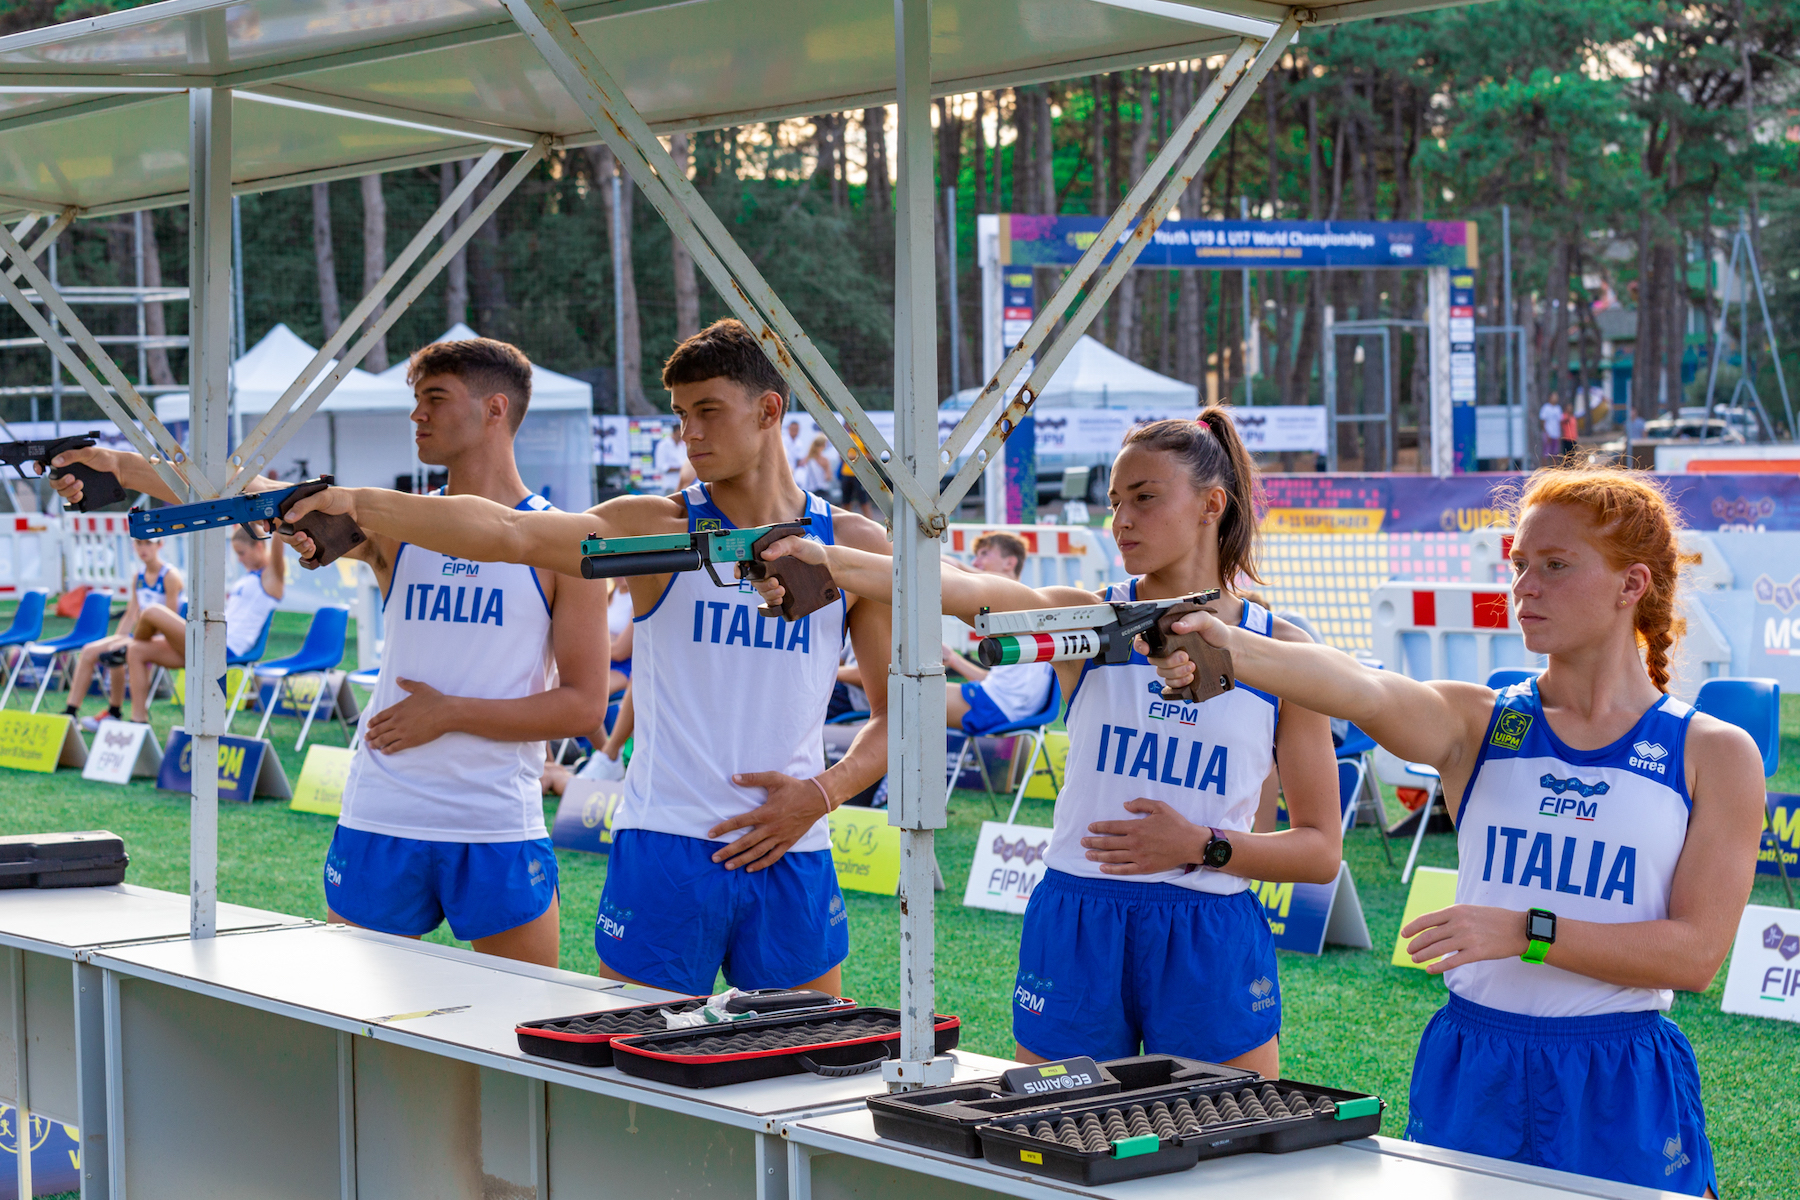 Al via gli Uipm 2022 Youth U19 & U17 World Championships: dal 4 all’11 Settembre a Lignano Sabbiadoro